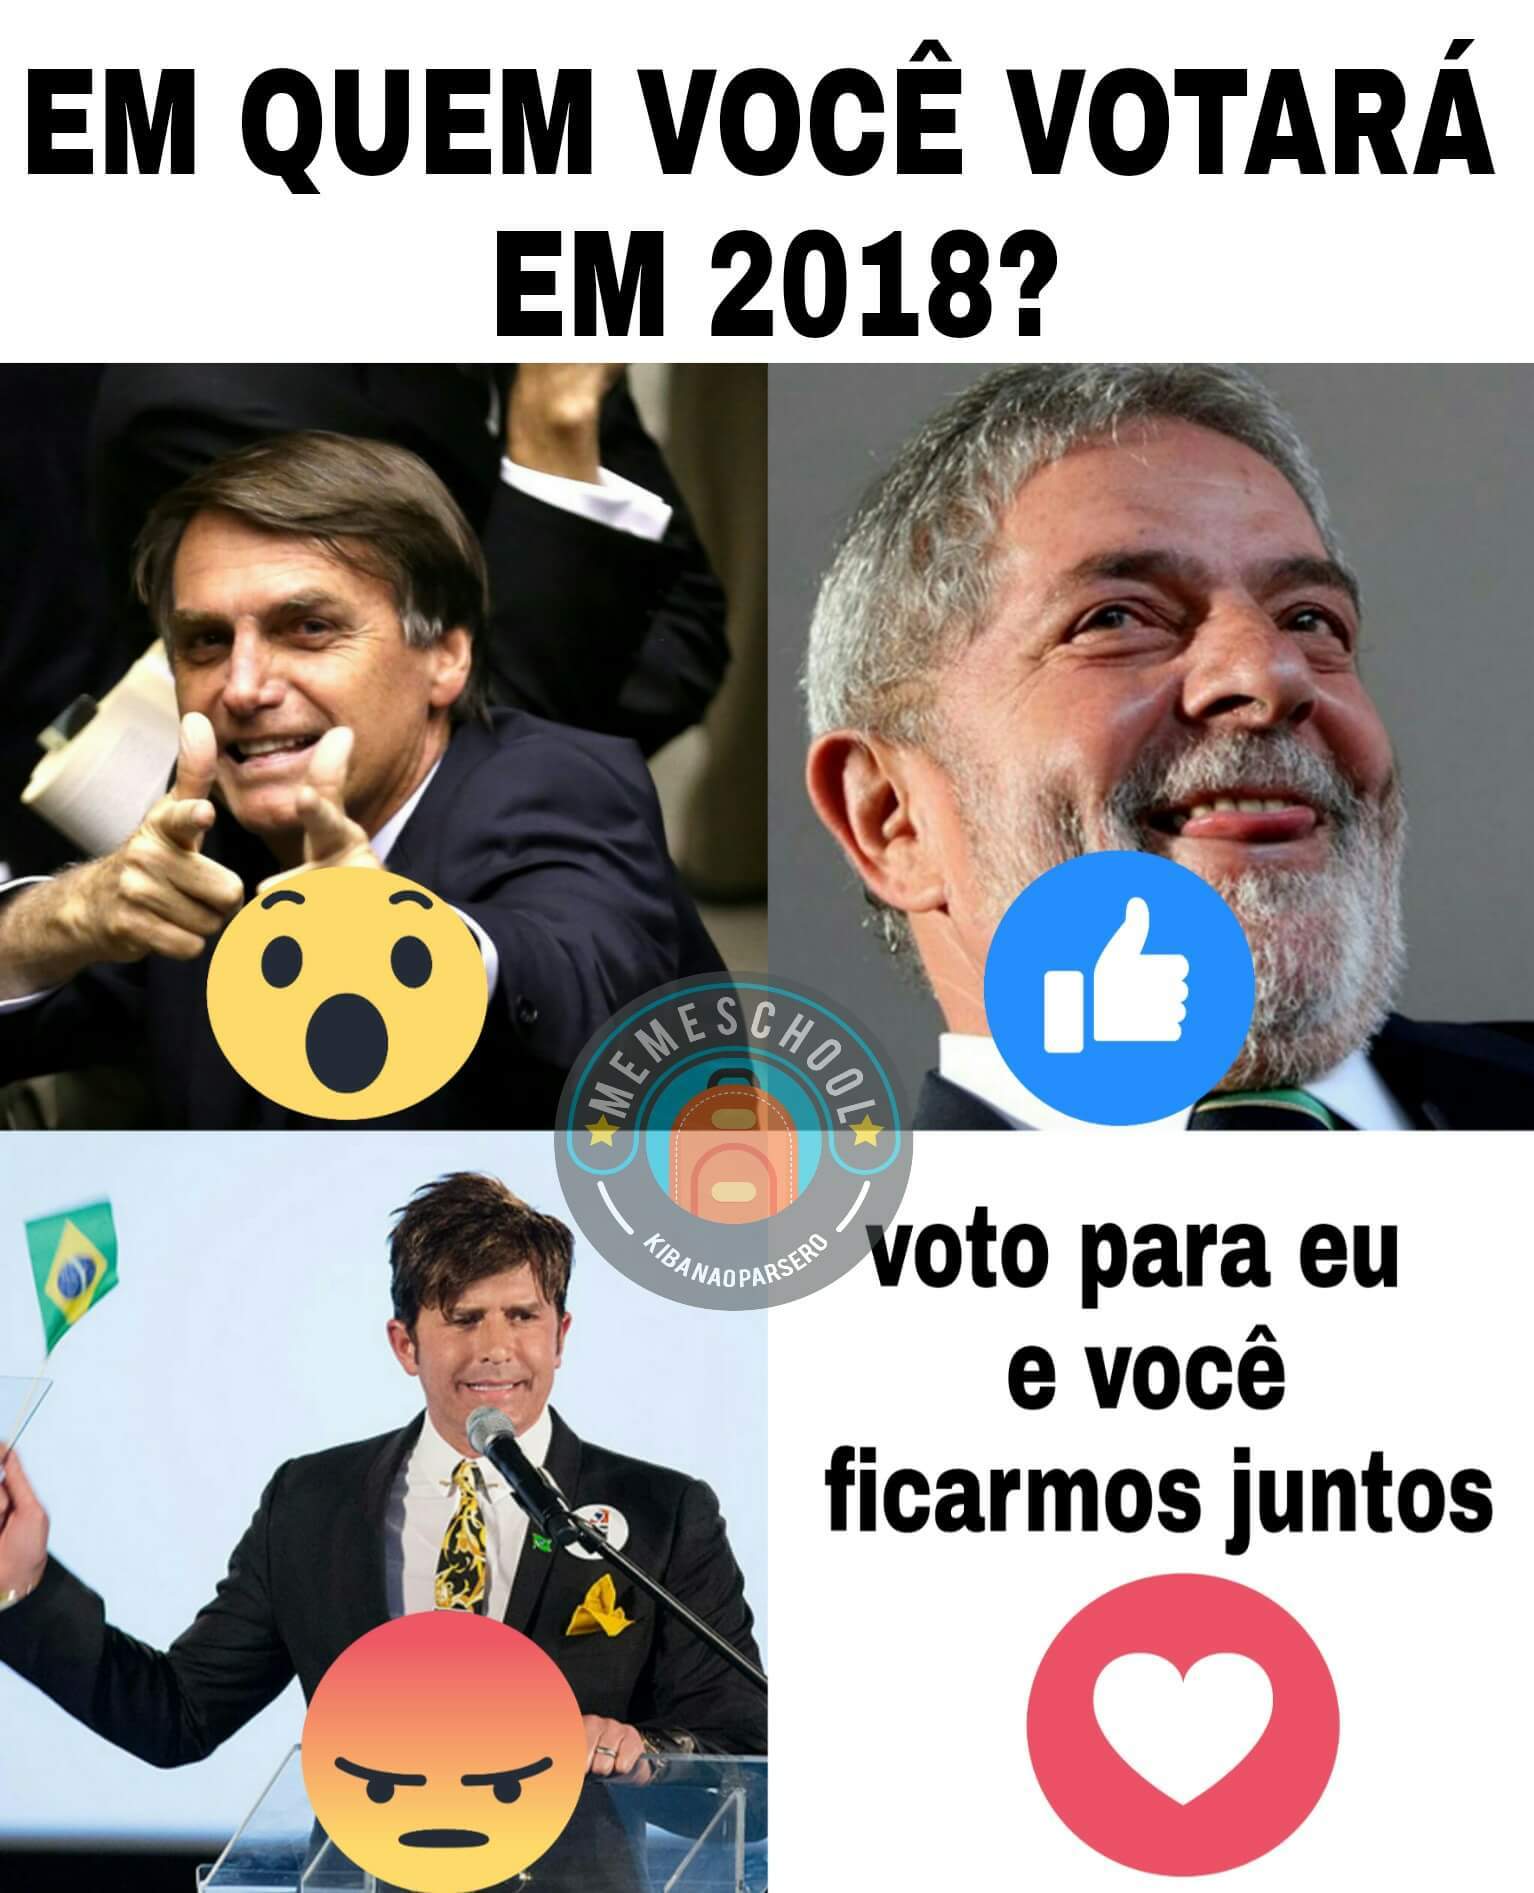 Bolo misto 2018, doctor who 2022, luladrão 2026 - meme